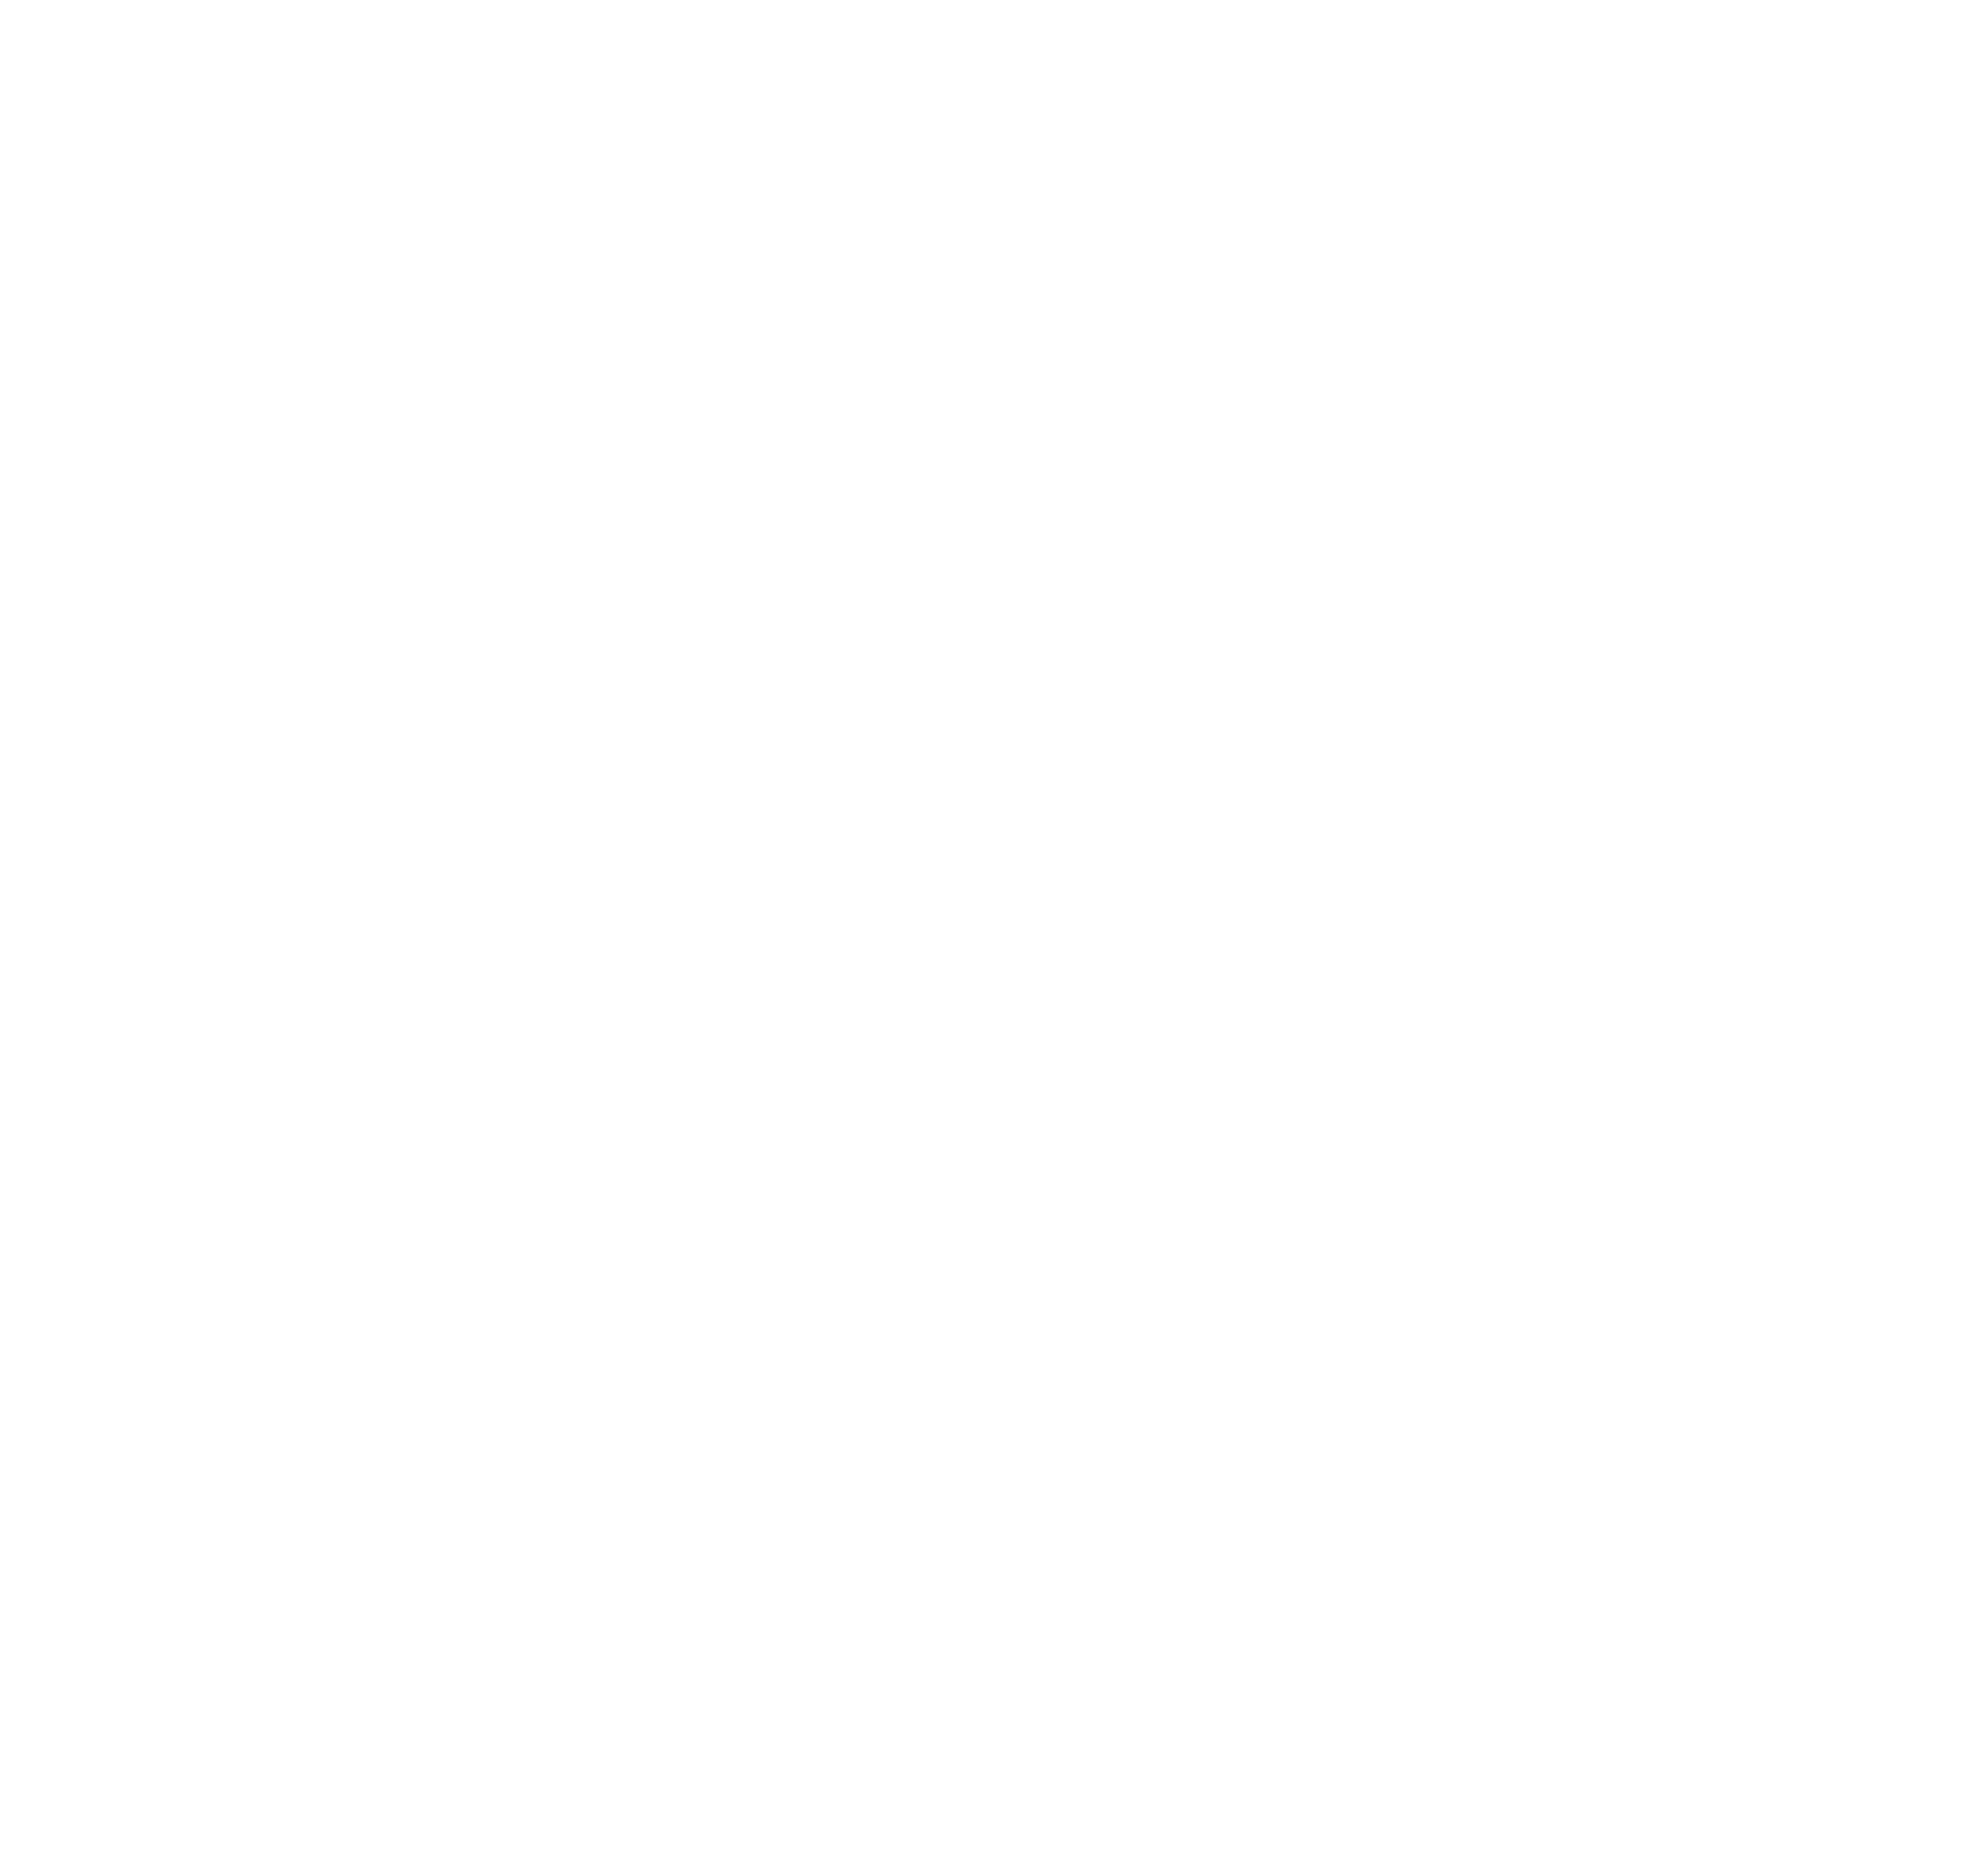 James Barnsley